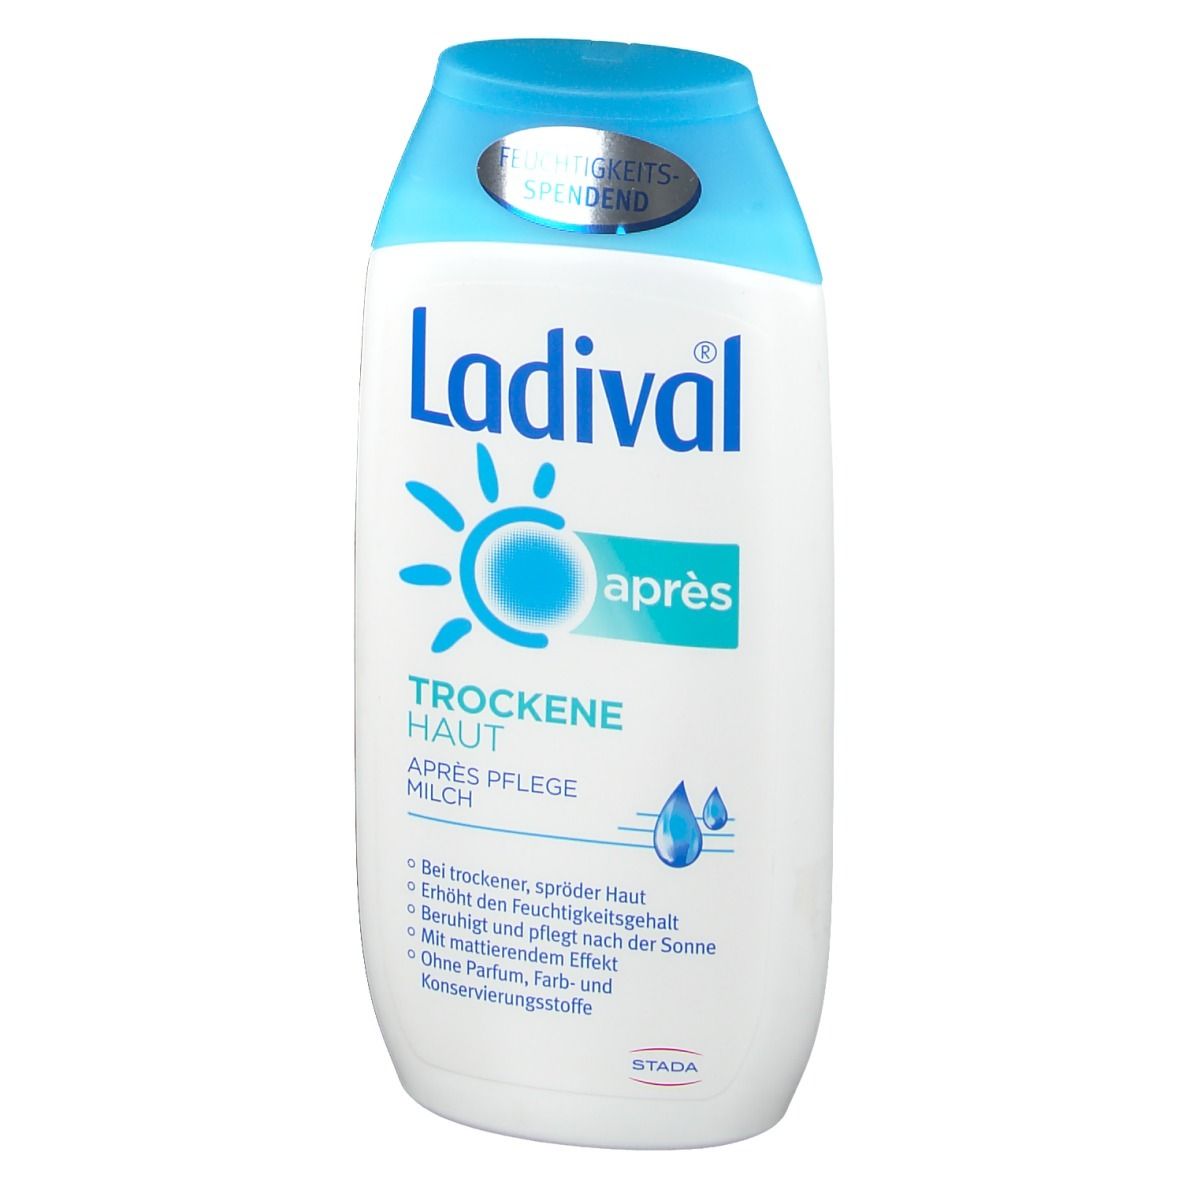 Ladival® Trockene Haut Après Pflege Milch